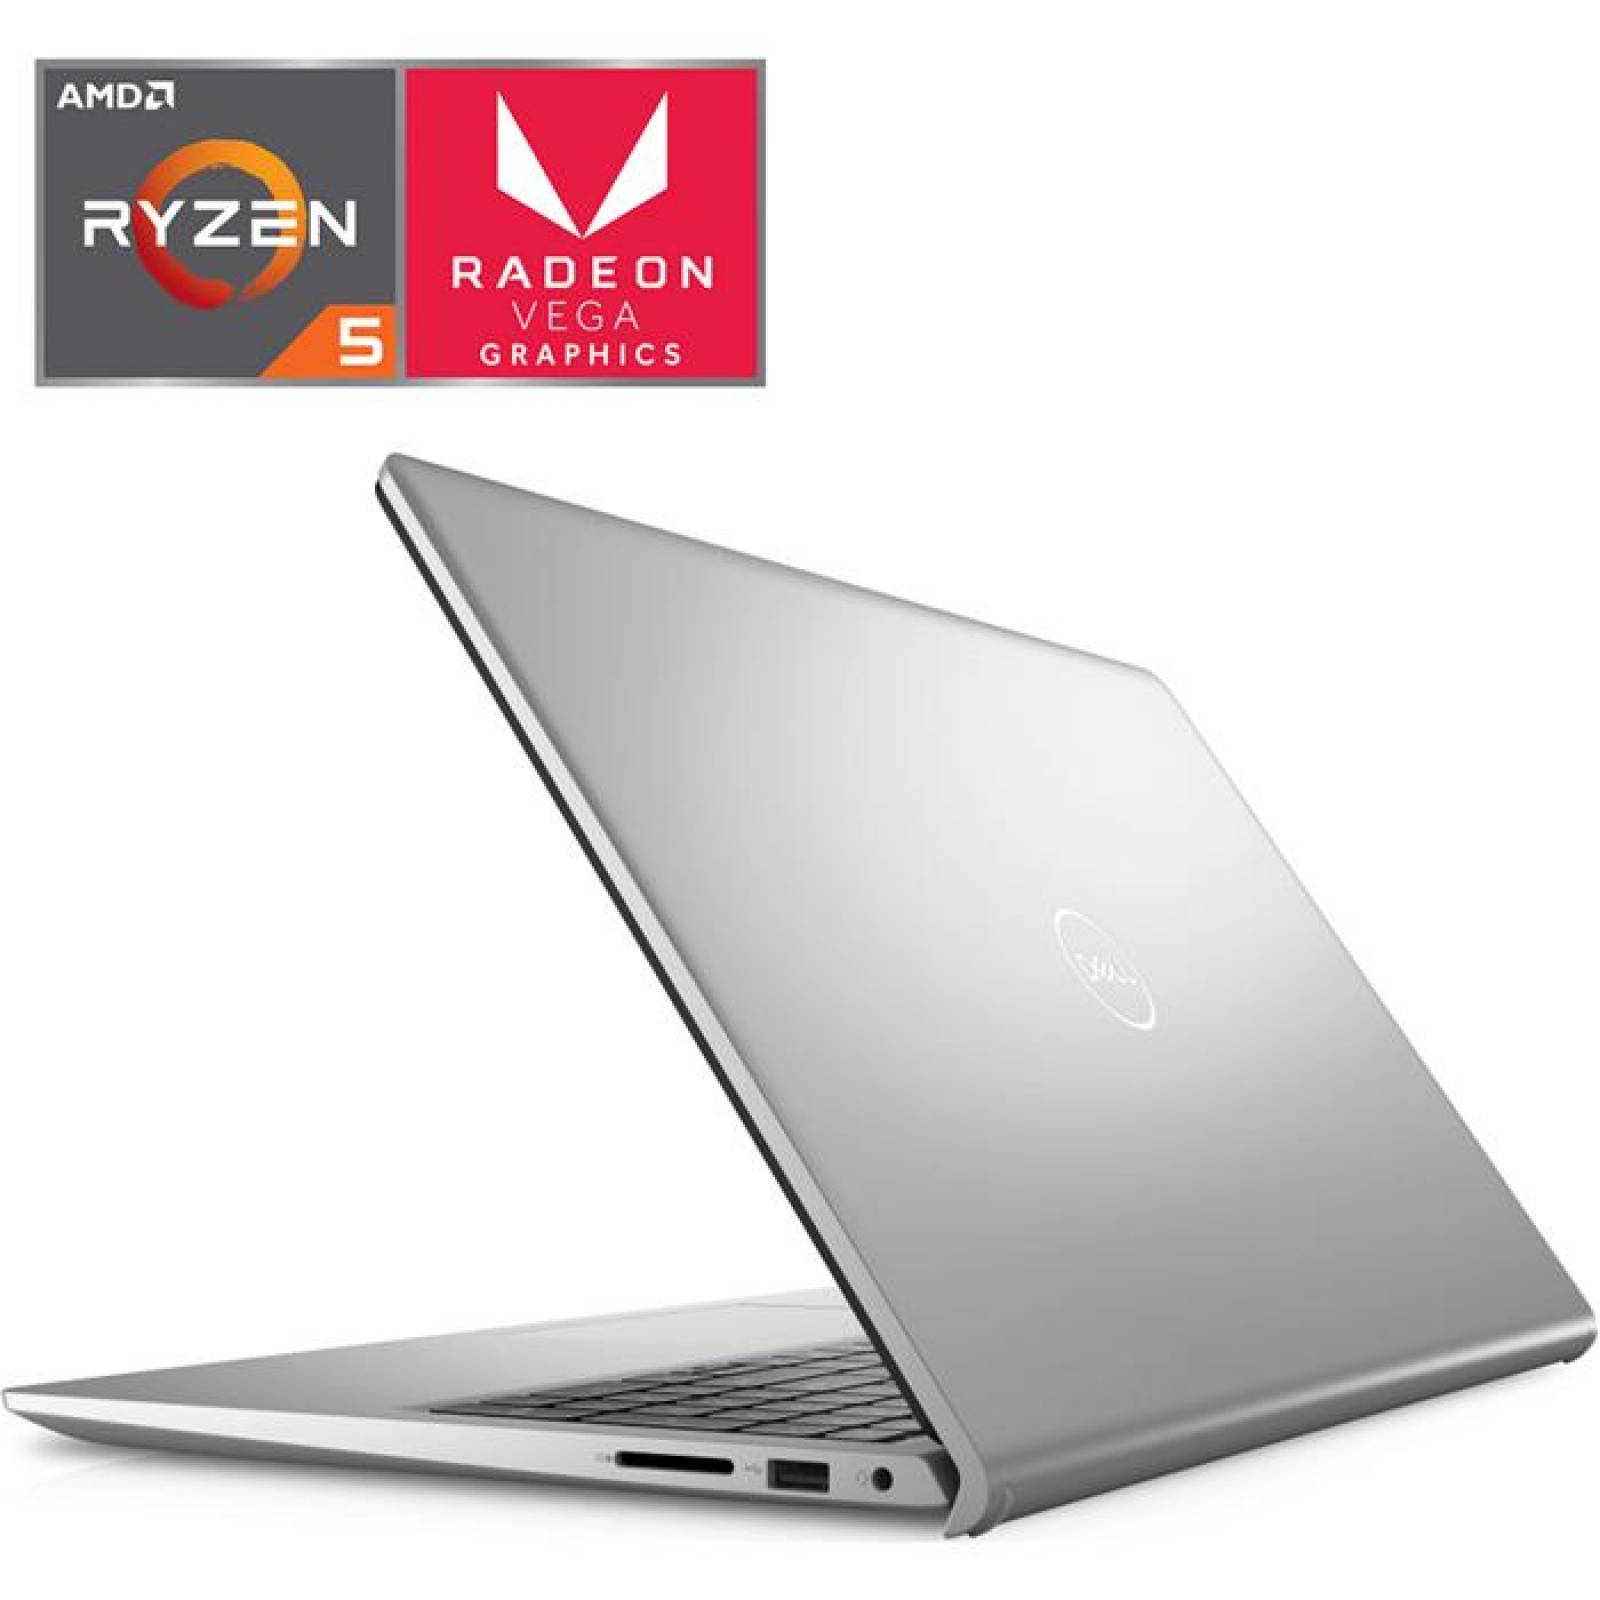 Laptop Gamer DELL Inspiron 3515 Ryzen 5 3450U 8GB 256GB SSD Radeon Vega 8 